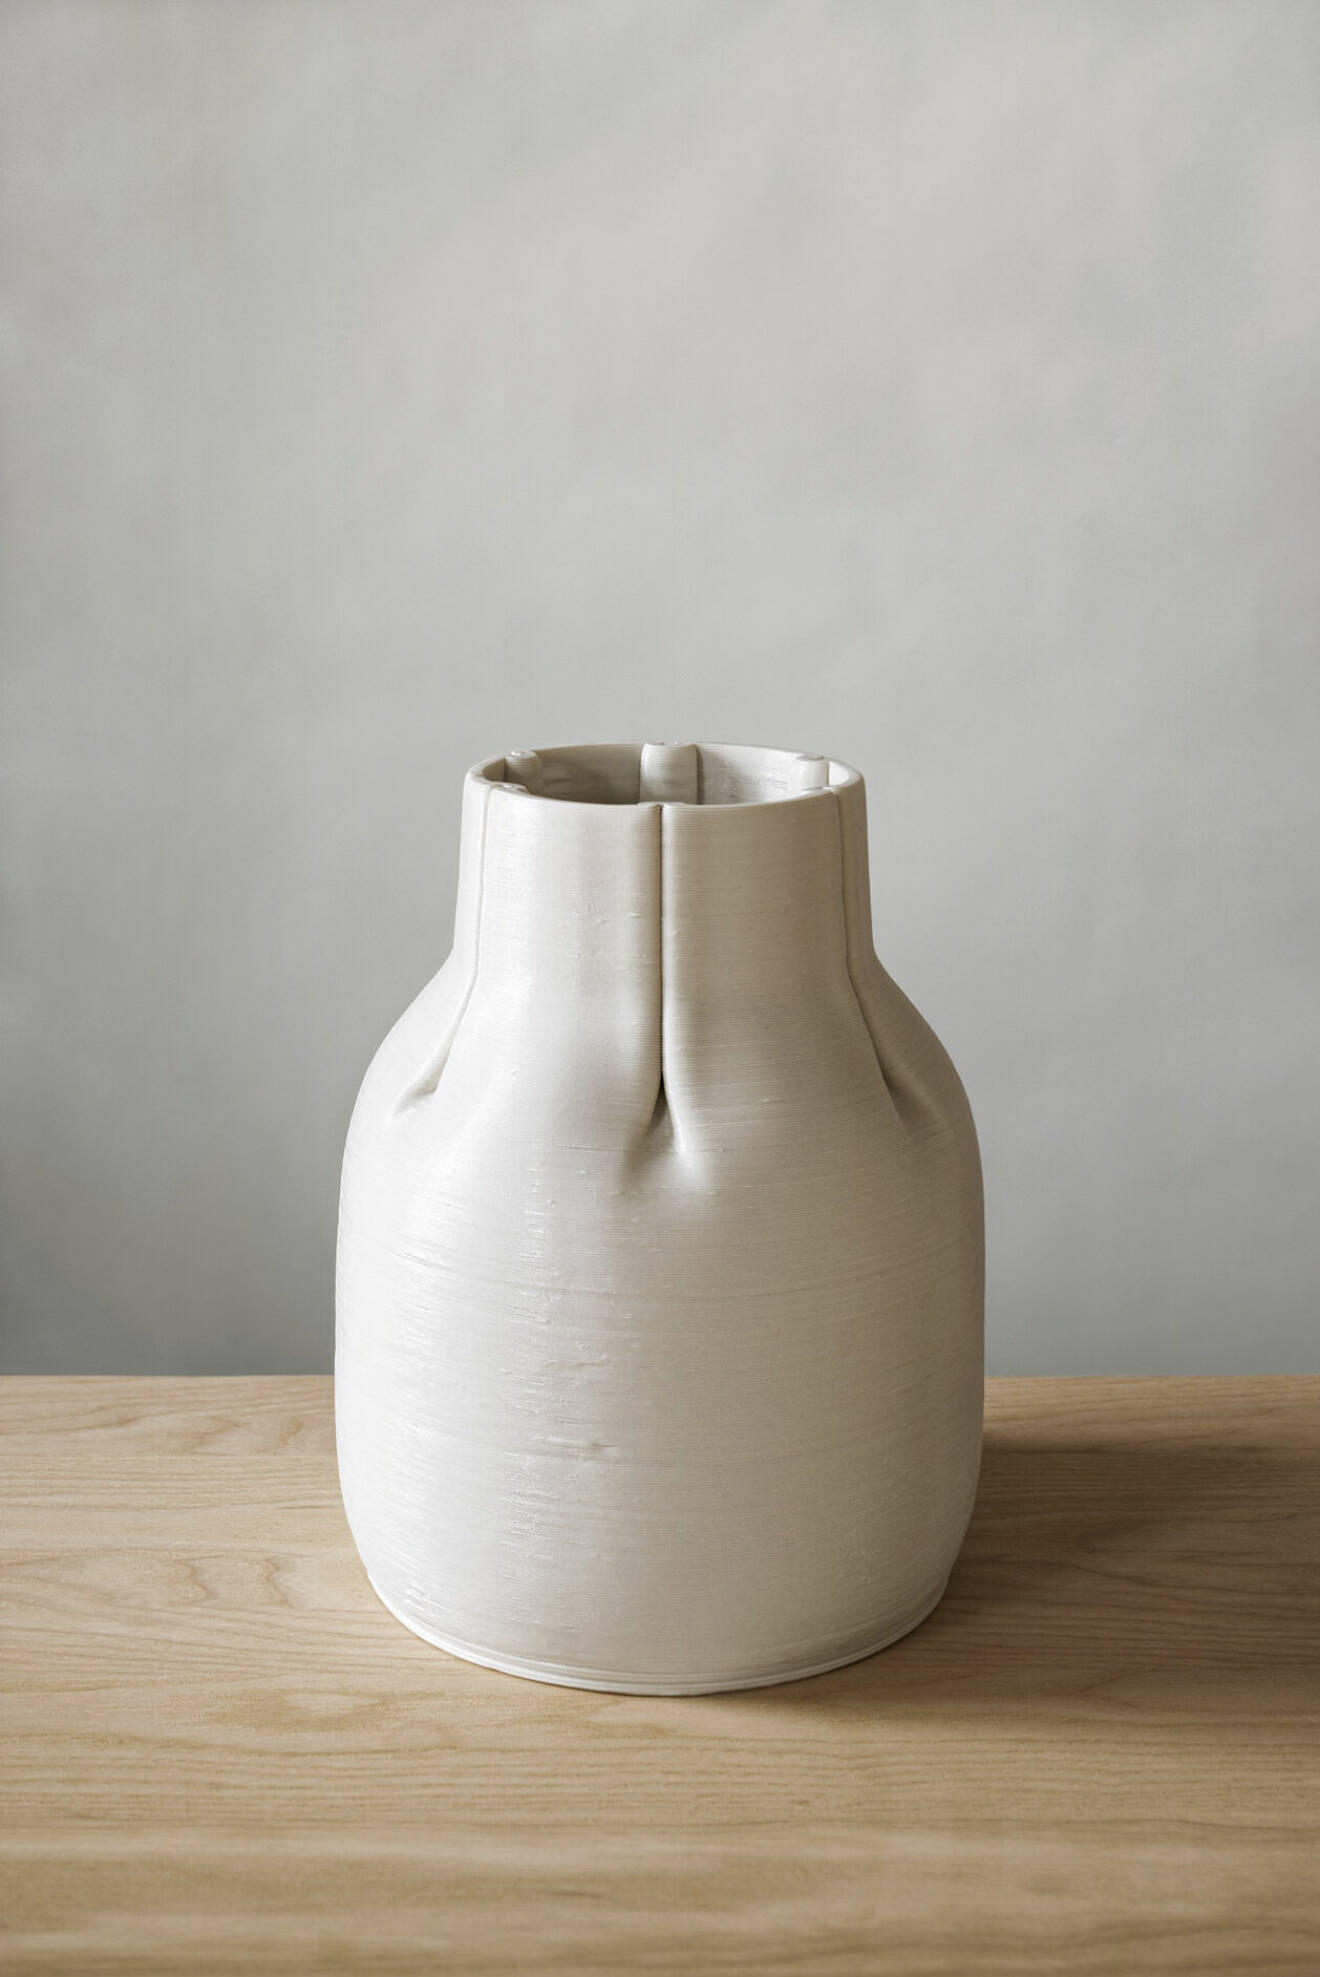 Vasen finns i begränsad upplaga om 20 exemplar och säljs i Rörstrand Store i Stockholm från augusti, höjd 23 cm, pris 2 100 kr.